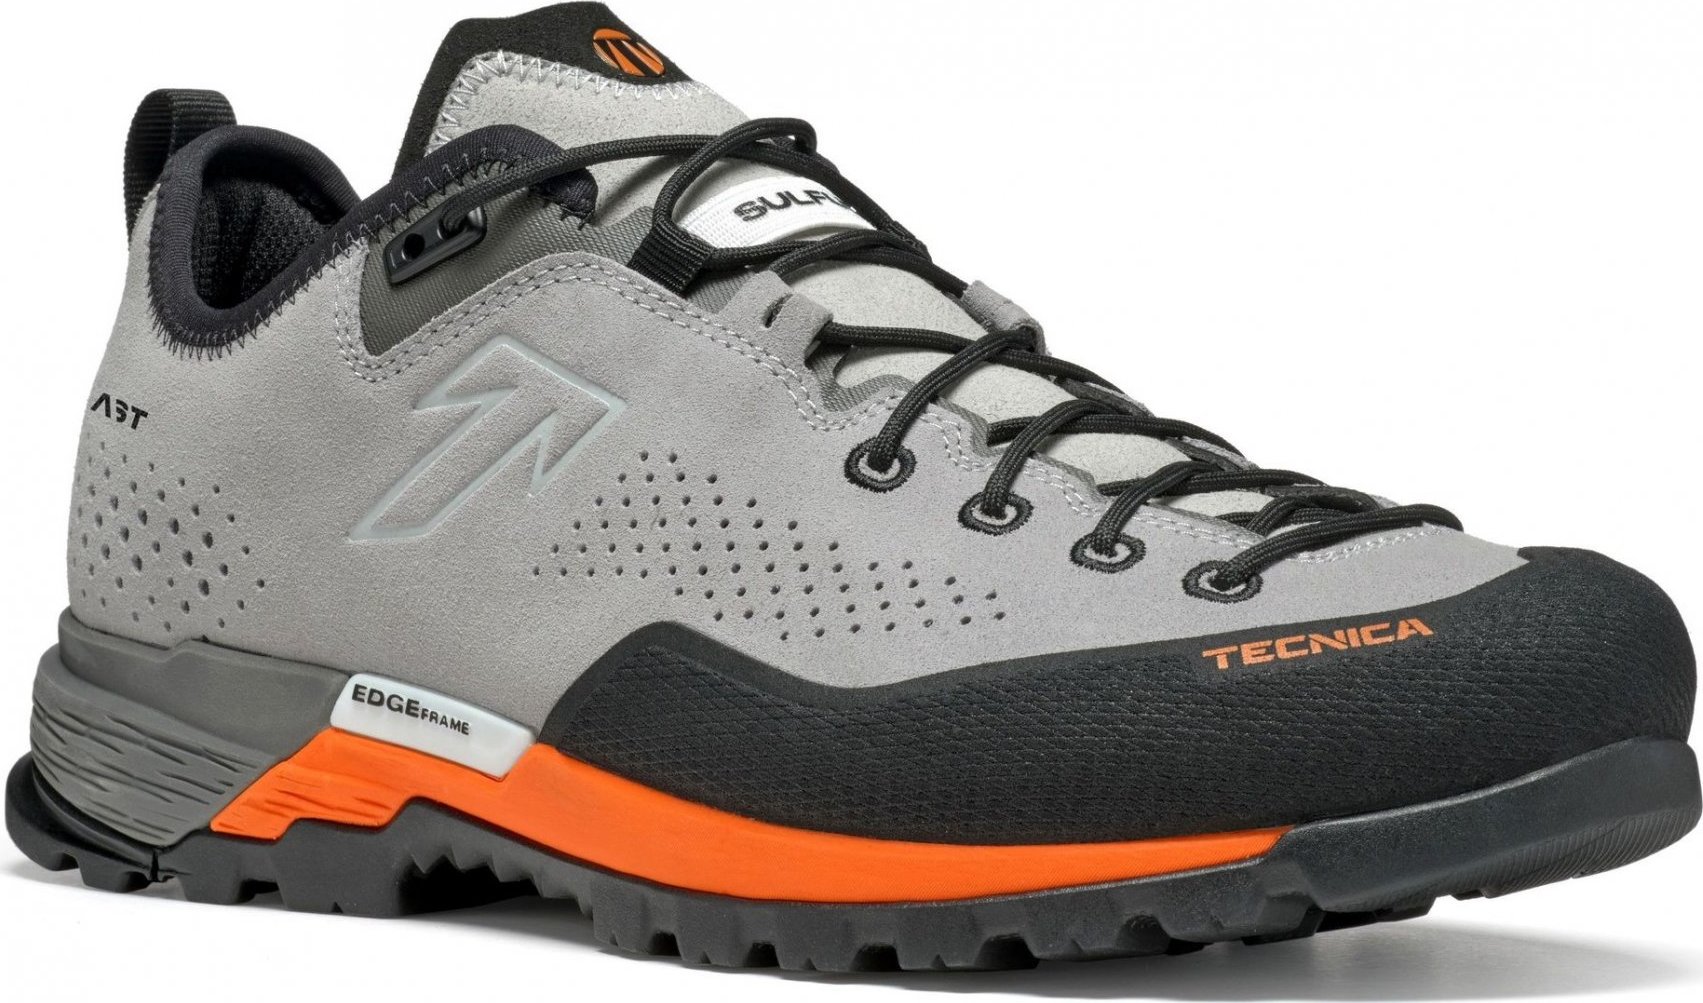 Pánské trekové boty TECNICA Sulfur Ms, 001 soft grey/ultra orange Velikost: 43 1/3